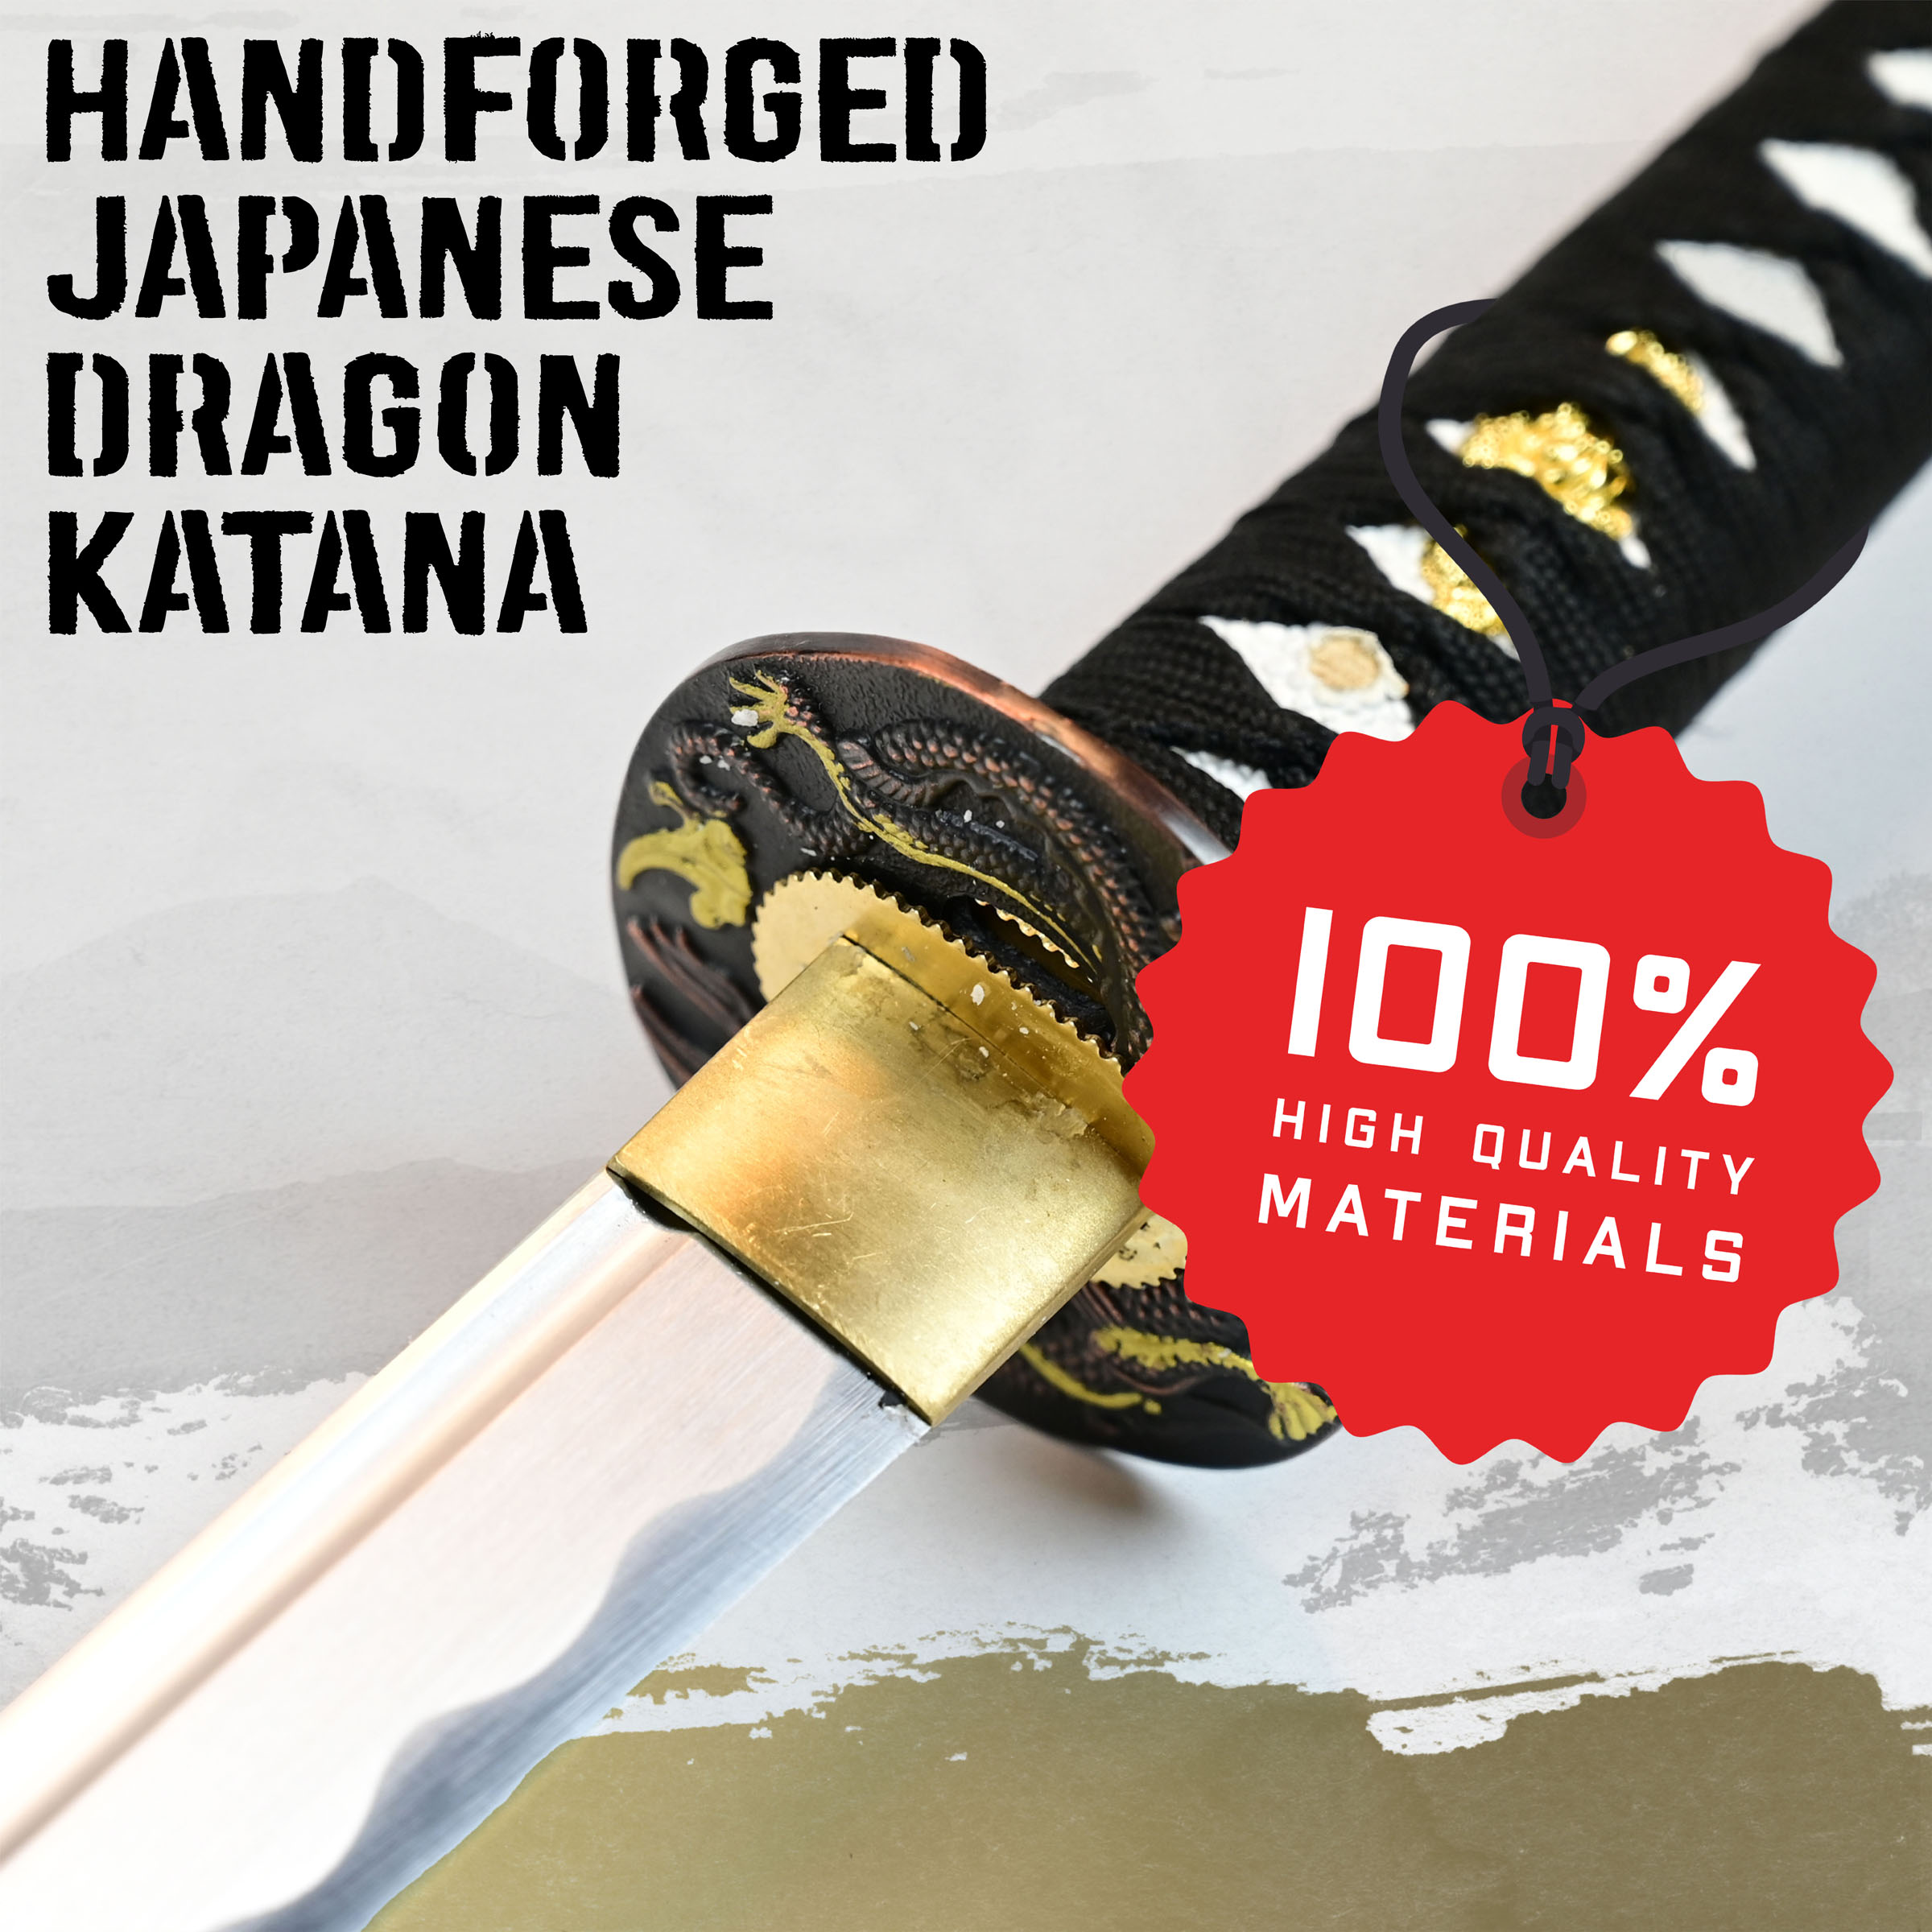 Handforged Japanese dragon katana